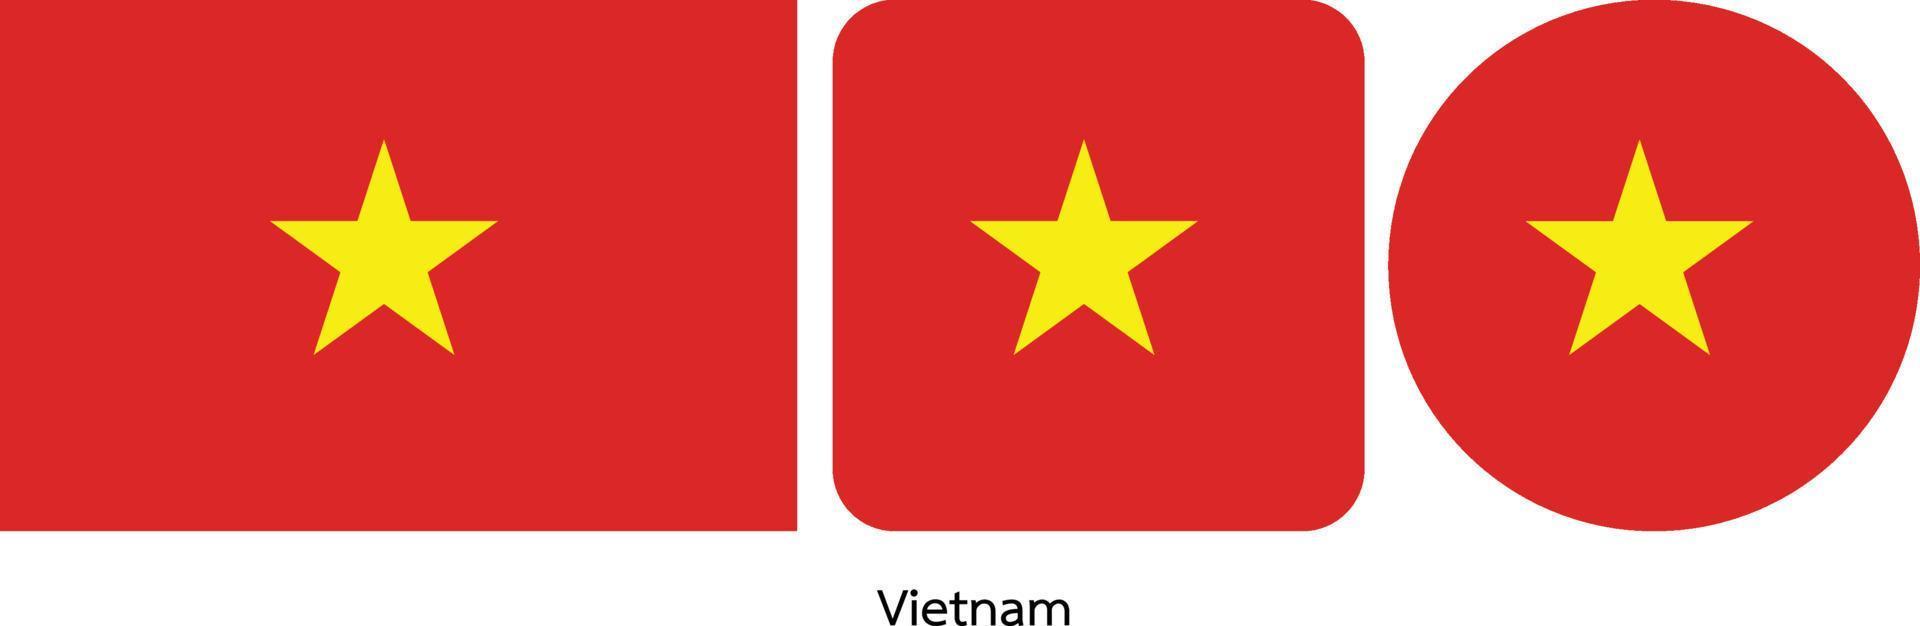 bandeira do vietnã, ilustração vetorial vetor